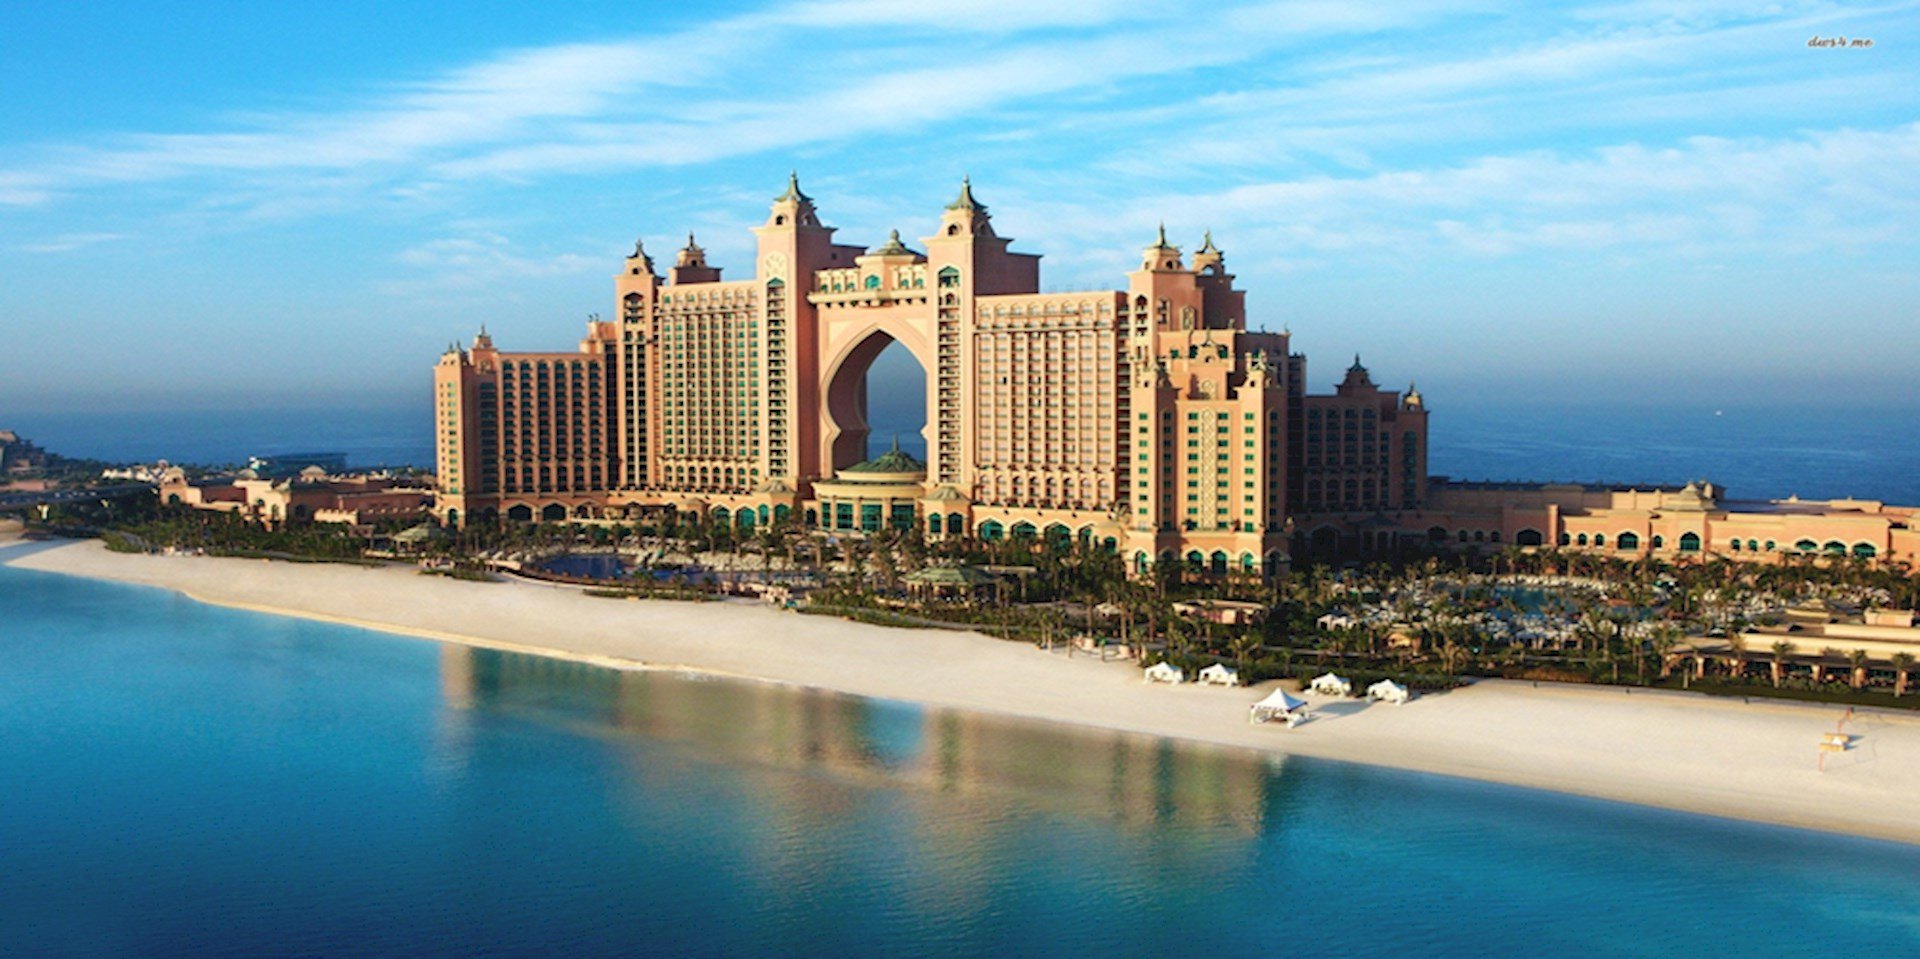 Dubai with Atlantis Stay